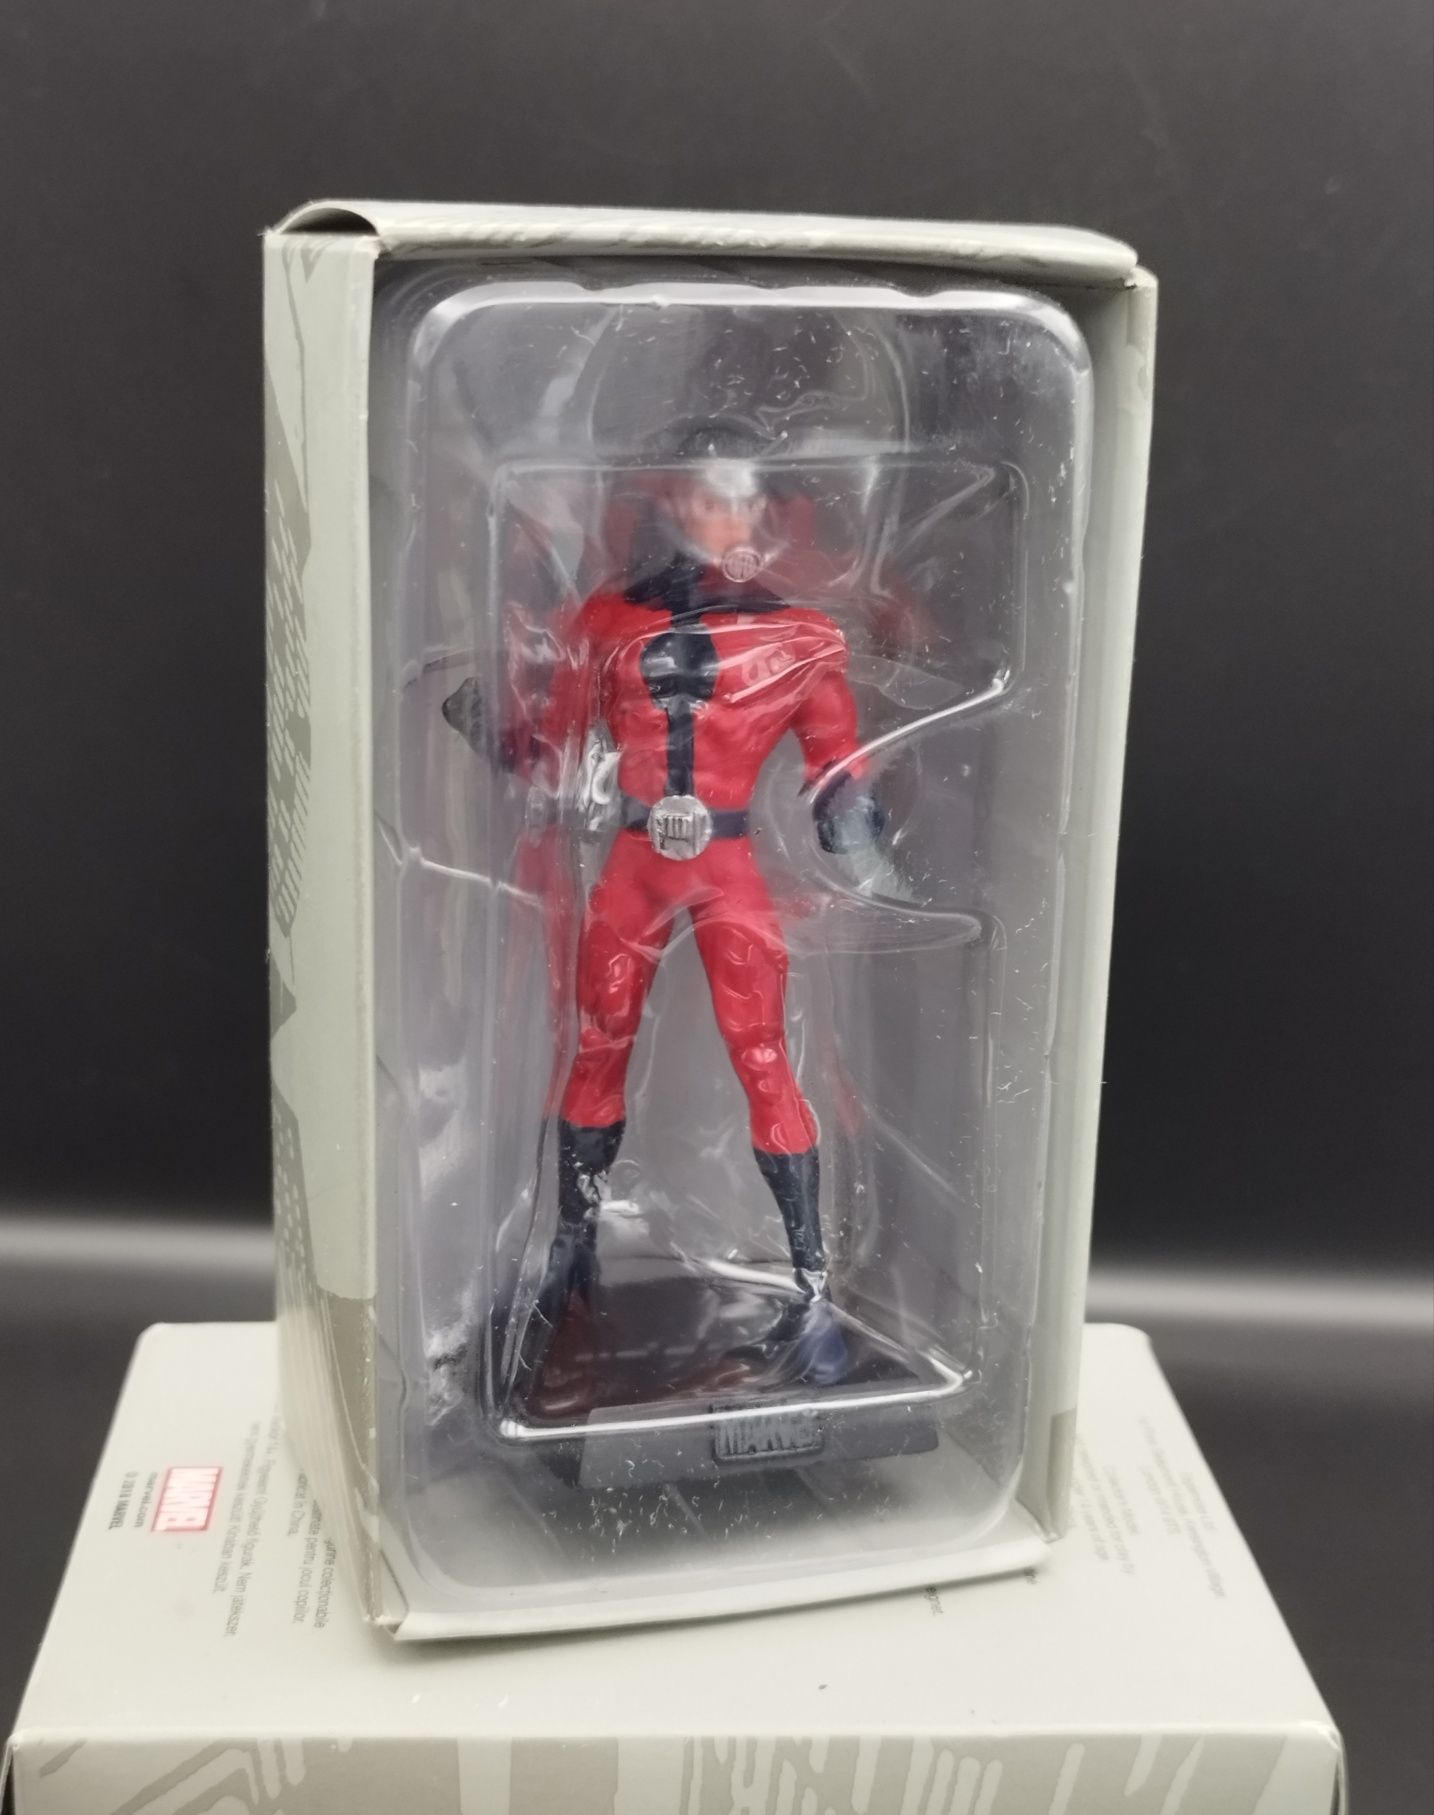 Figurka Marvel Klasyczna Ant-Man 2 #21  ok 8 cm do figurki posiada ory